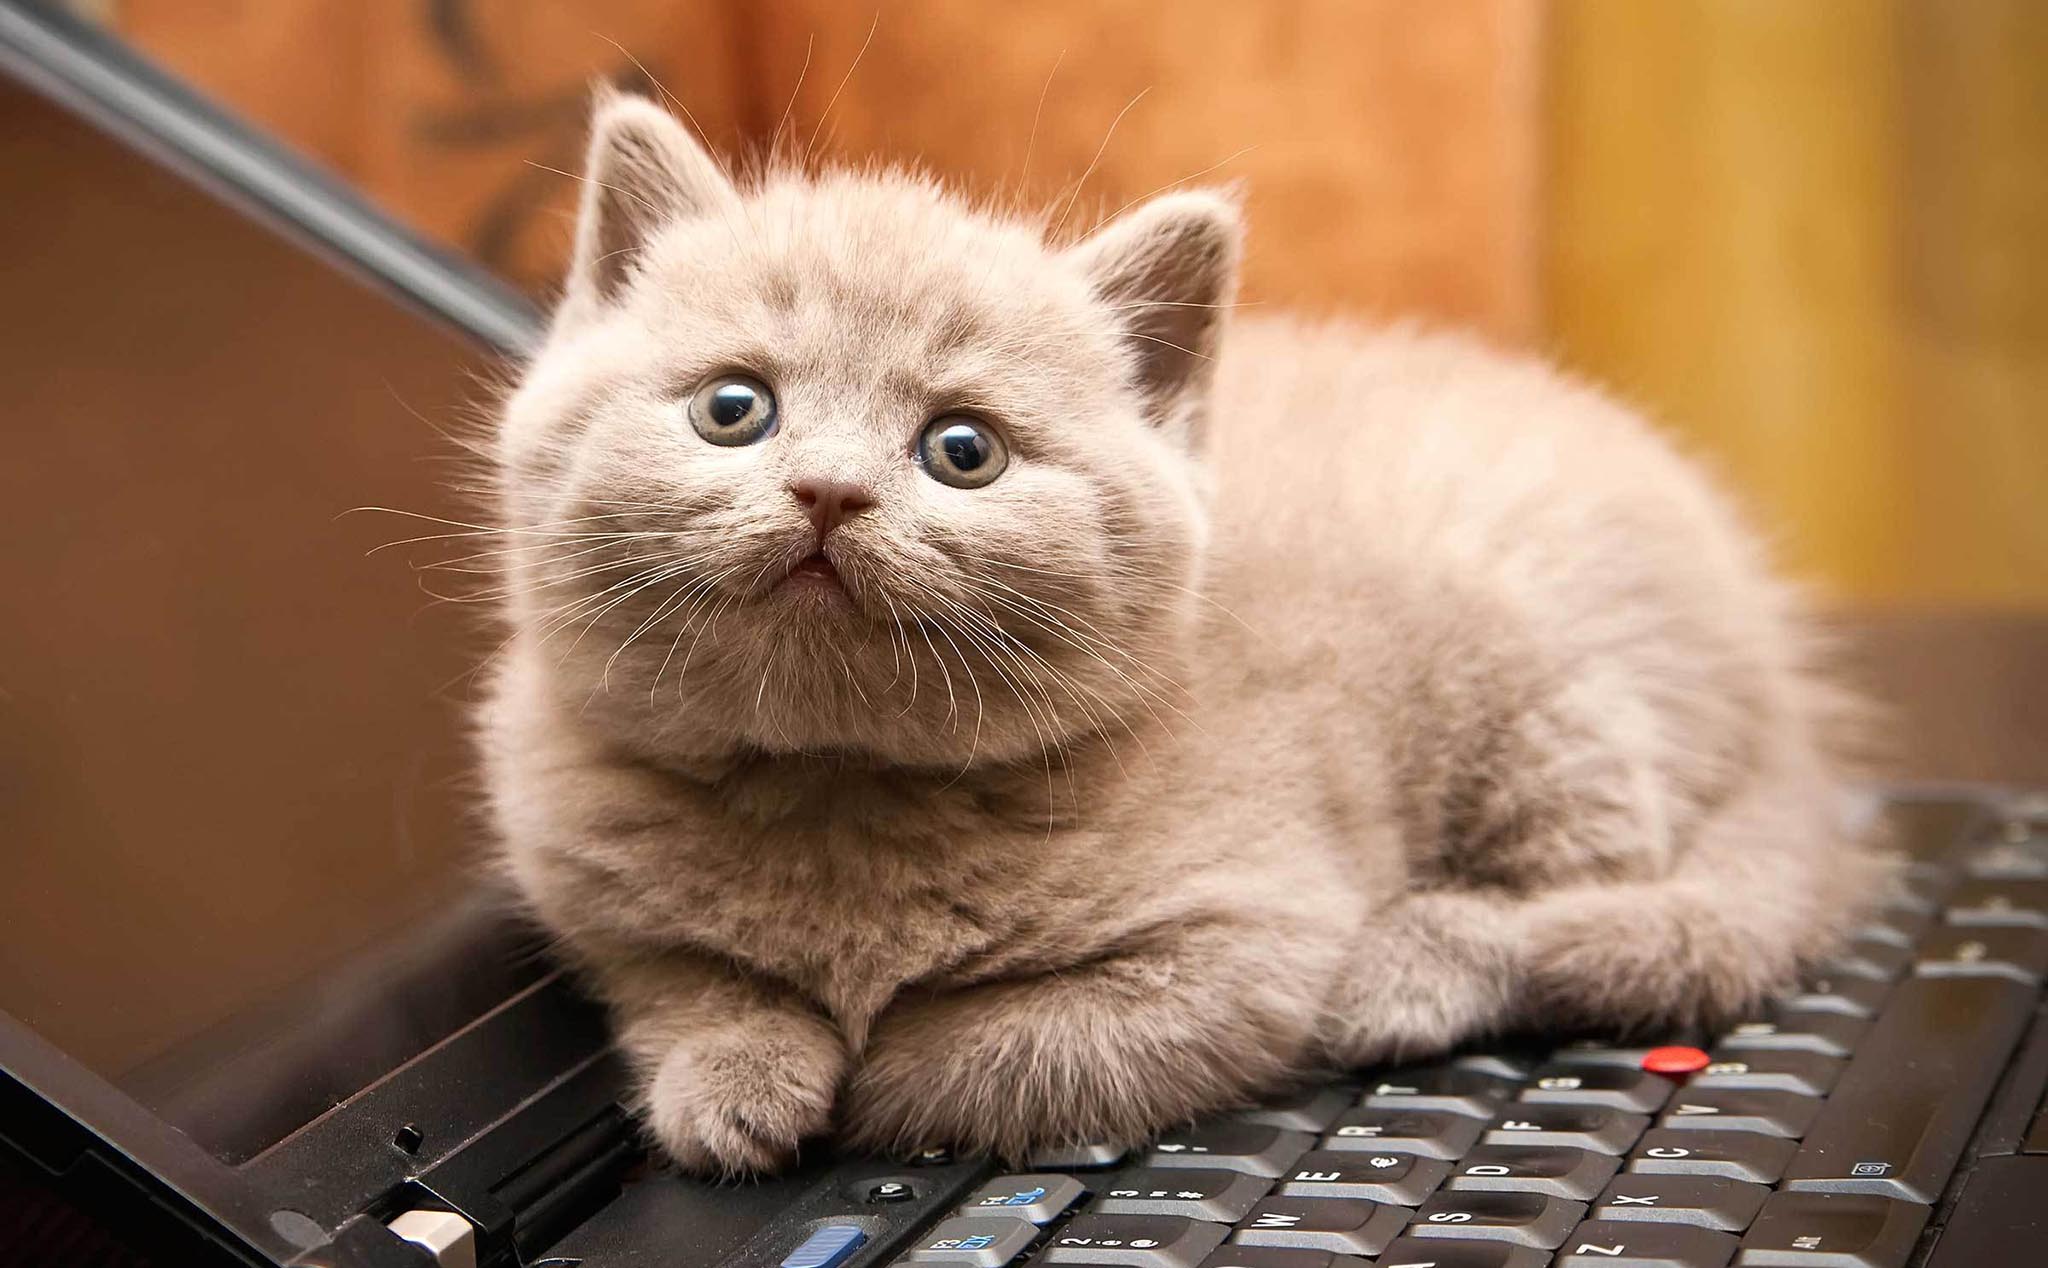 Bạn là người yêu thích laptop và mèo? Hãy xem bức ảnh độc đáo này về một chú mèo đáng yêu đang bảo vệ laptop của mình. Chắc chắn bạn sẽ cảm thấy bất ngờ với khoảnh khắc đáng yêu này và muốn sở hữu bức ảnh ngay lập tức!